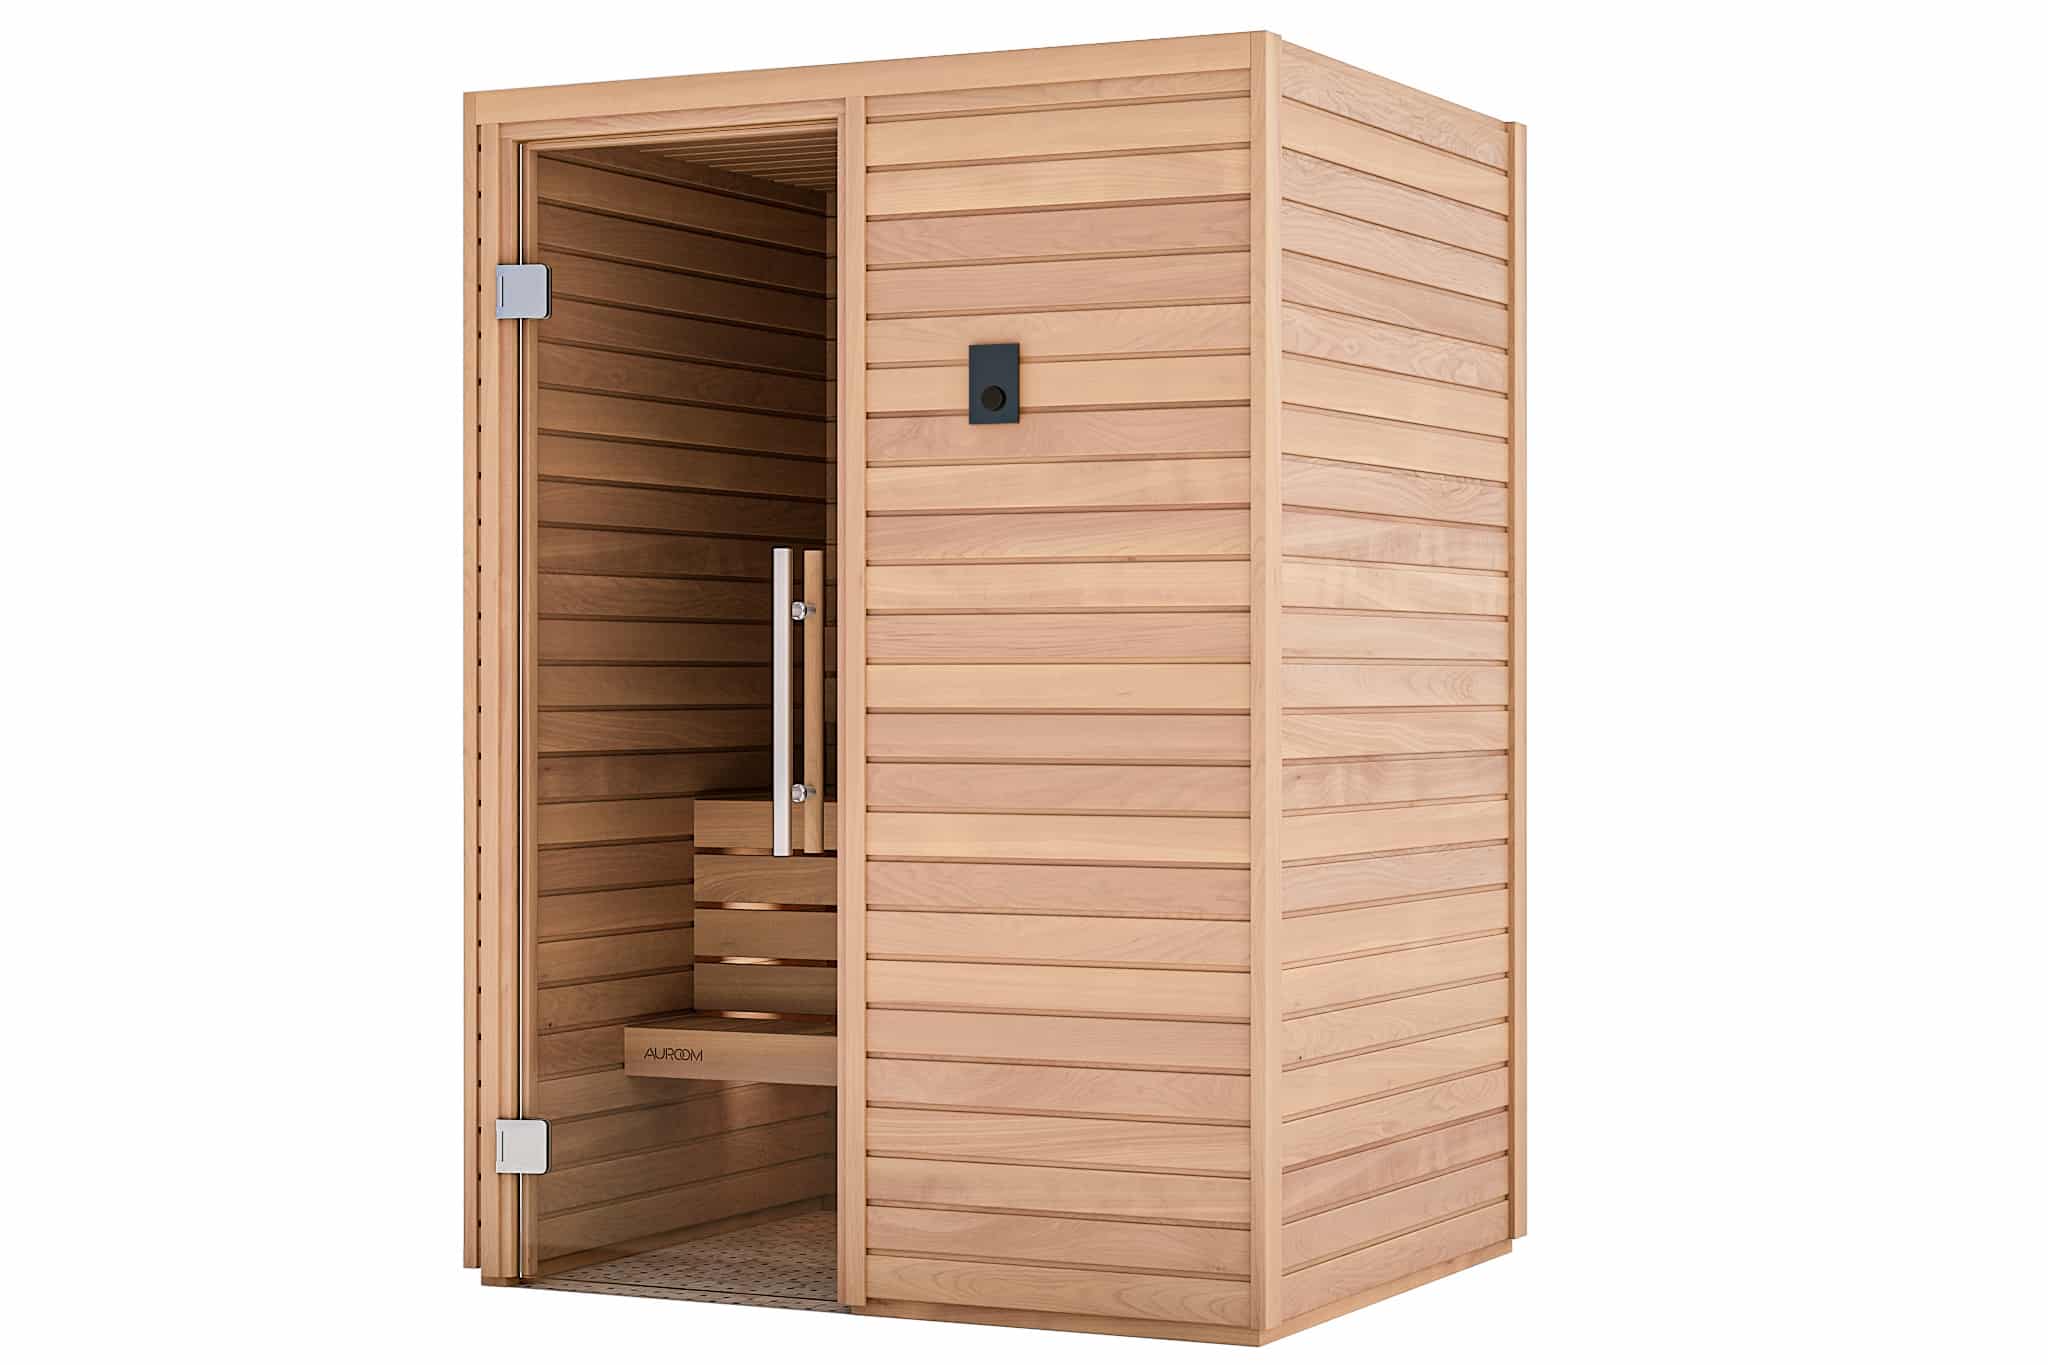 sauna cala luxembourg auroom